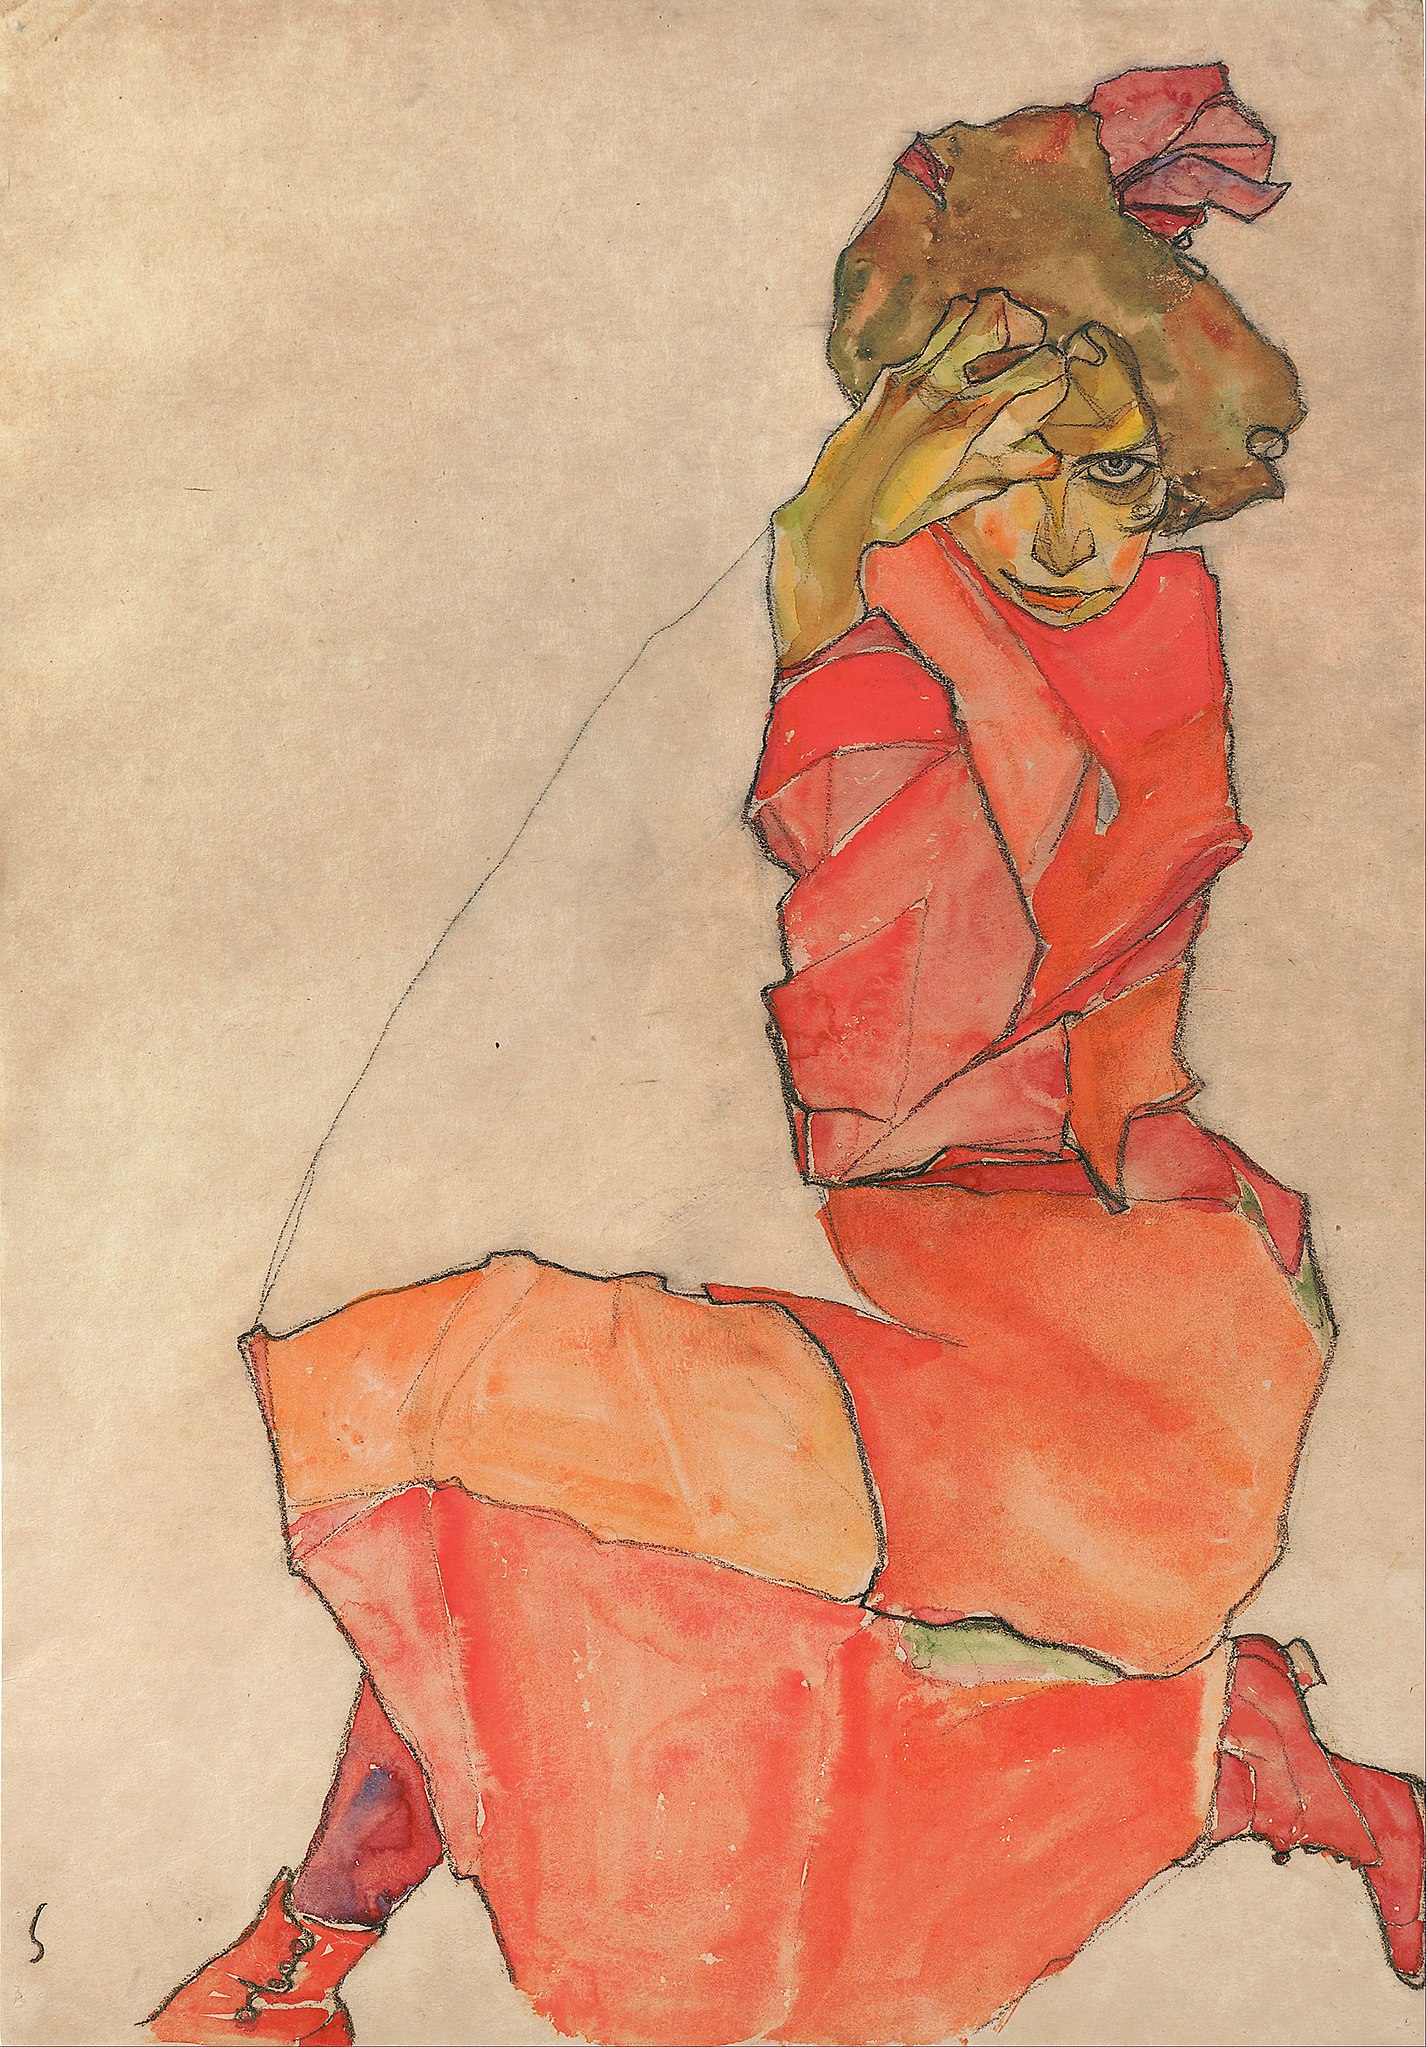 著橘紅色裙的蹲著的女人 by Egon Schiele - 1910 - 44.6 x 31 cm 